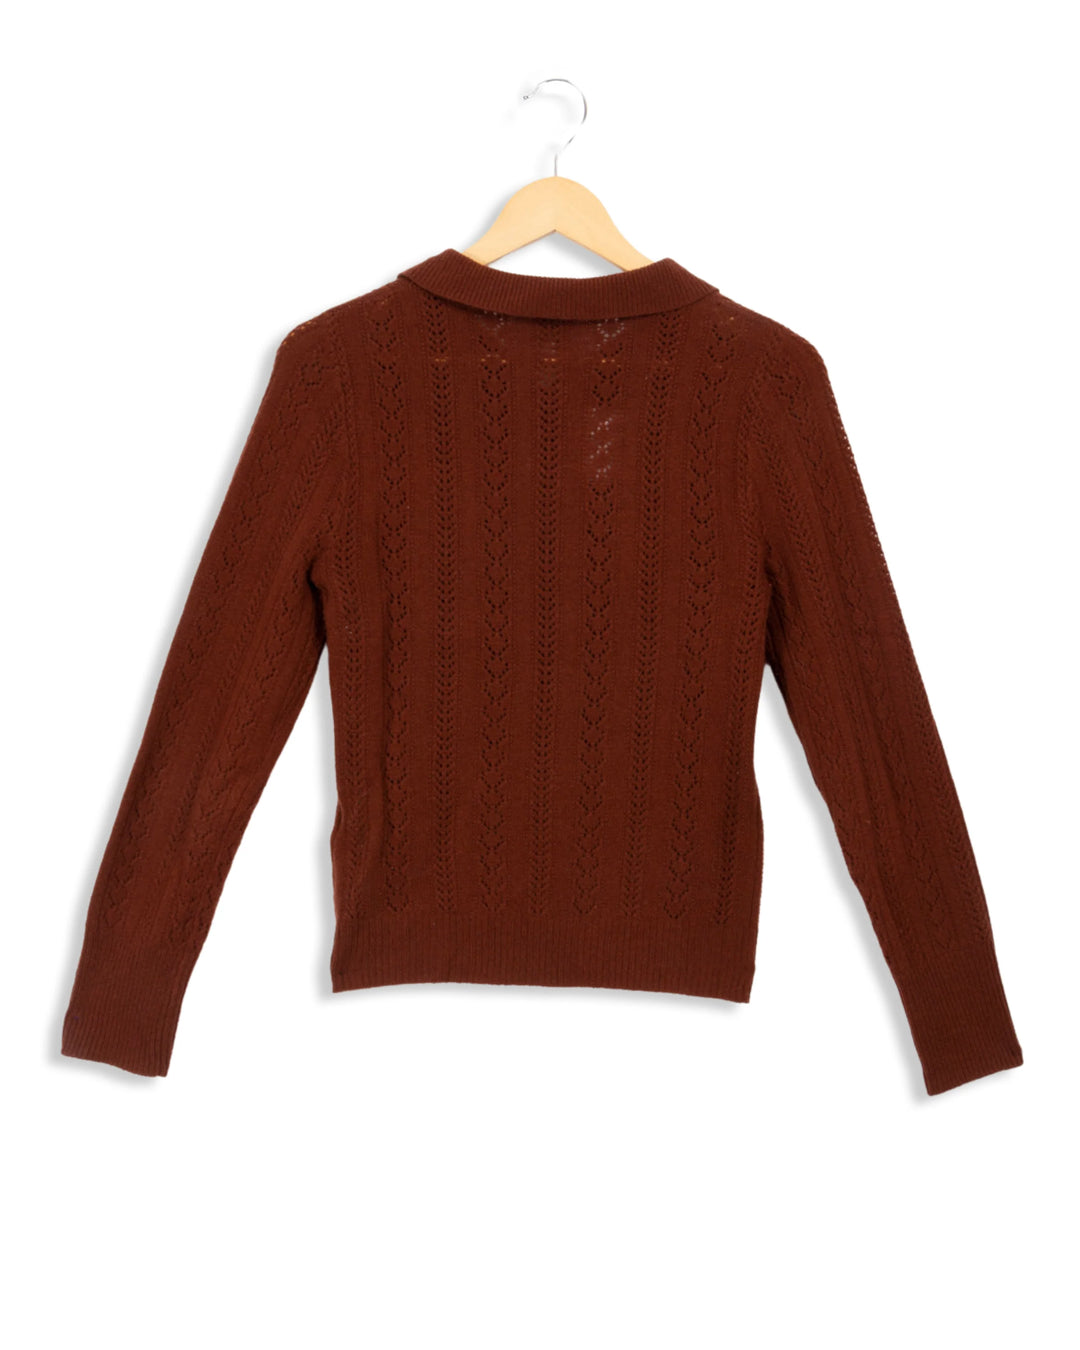 Light knit sweater - XS